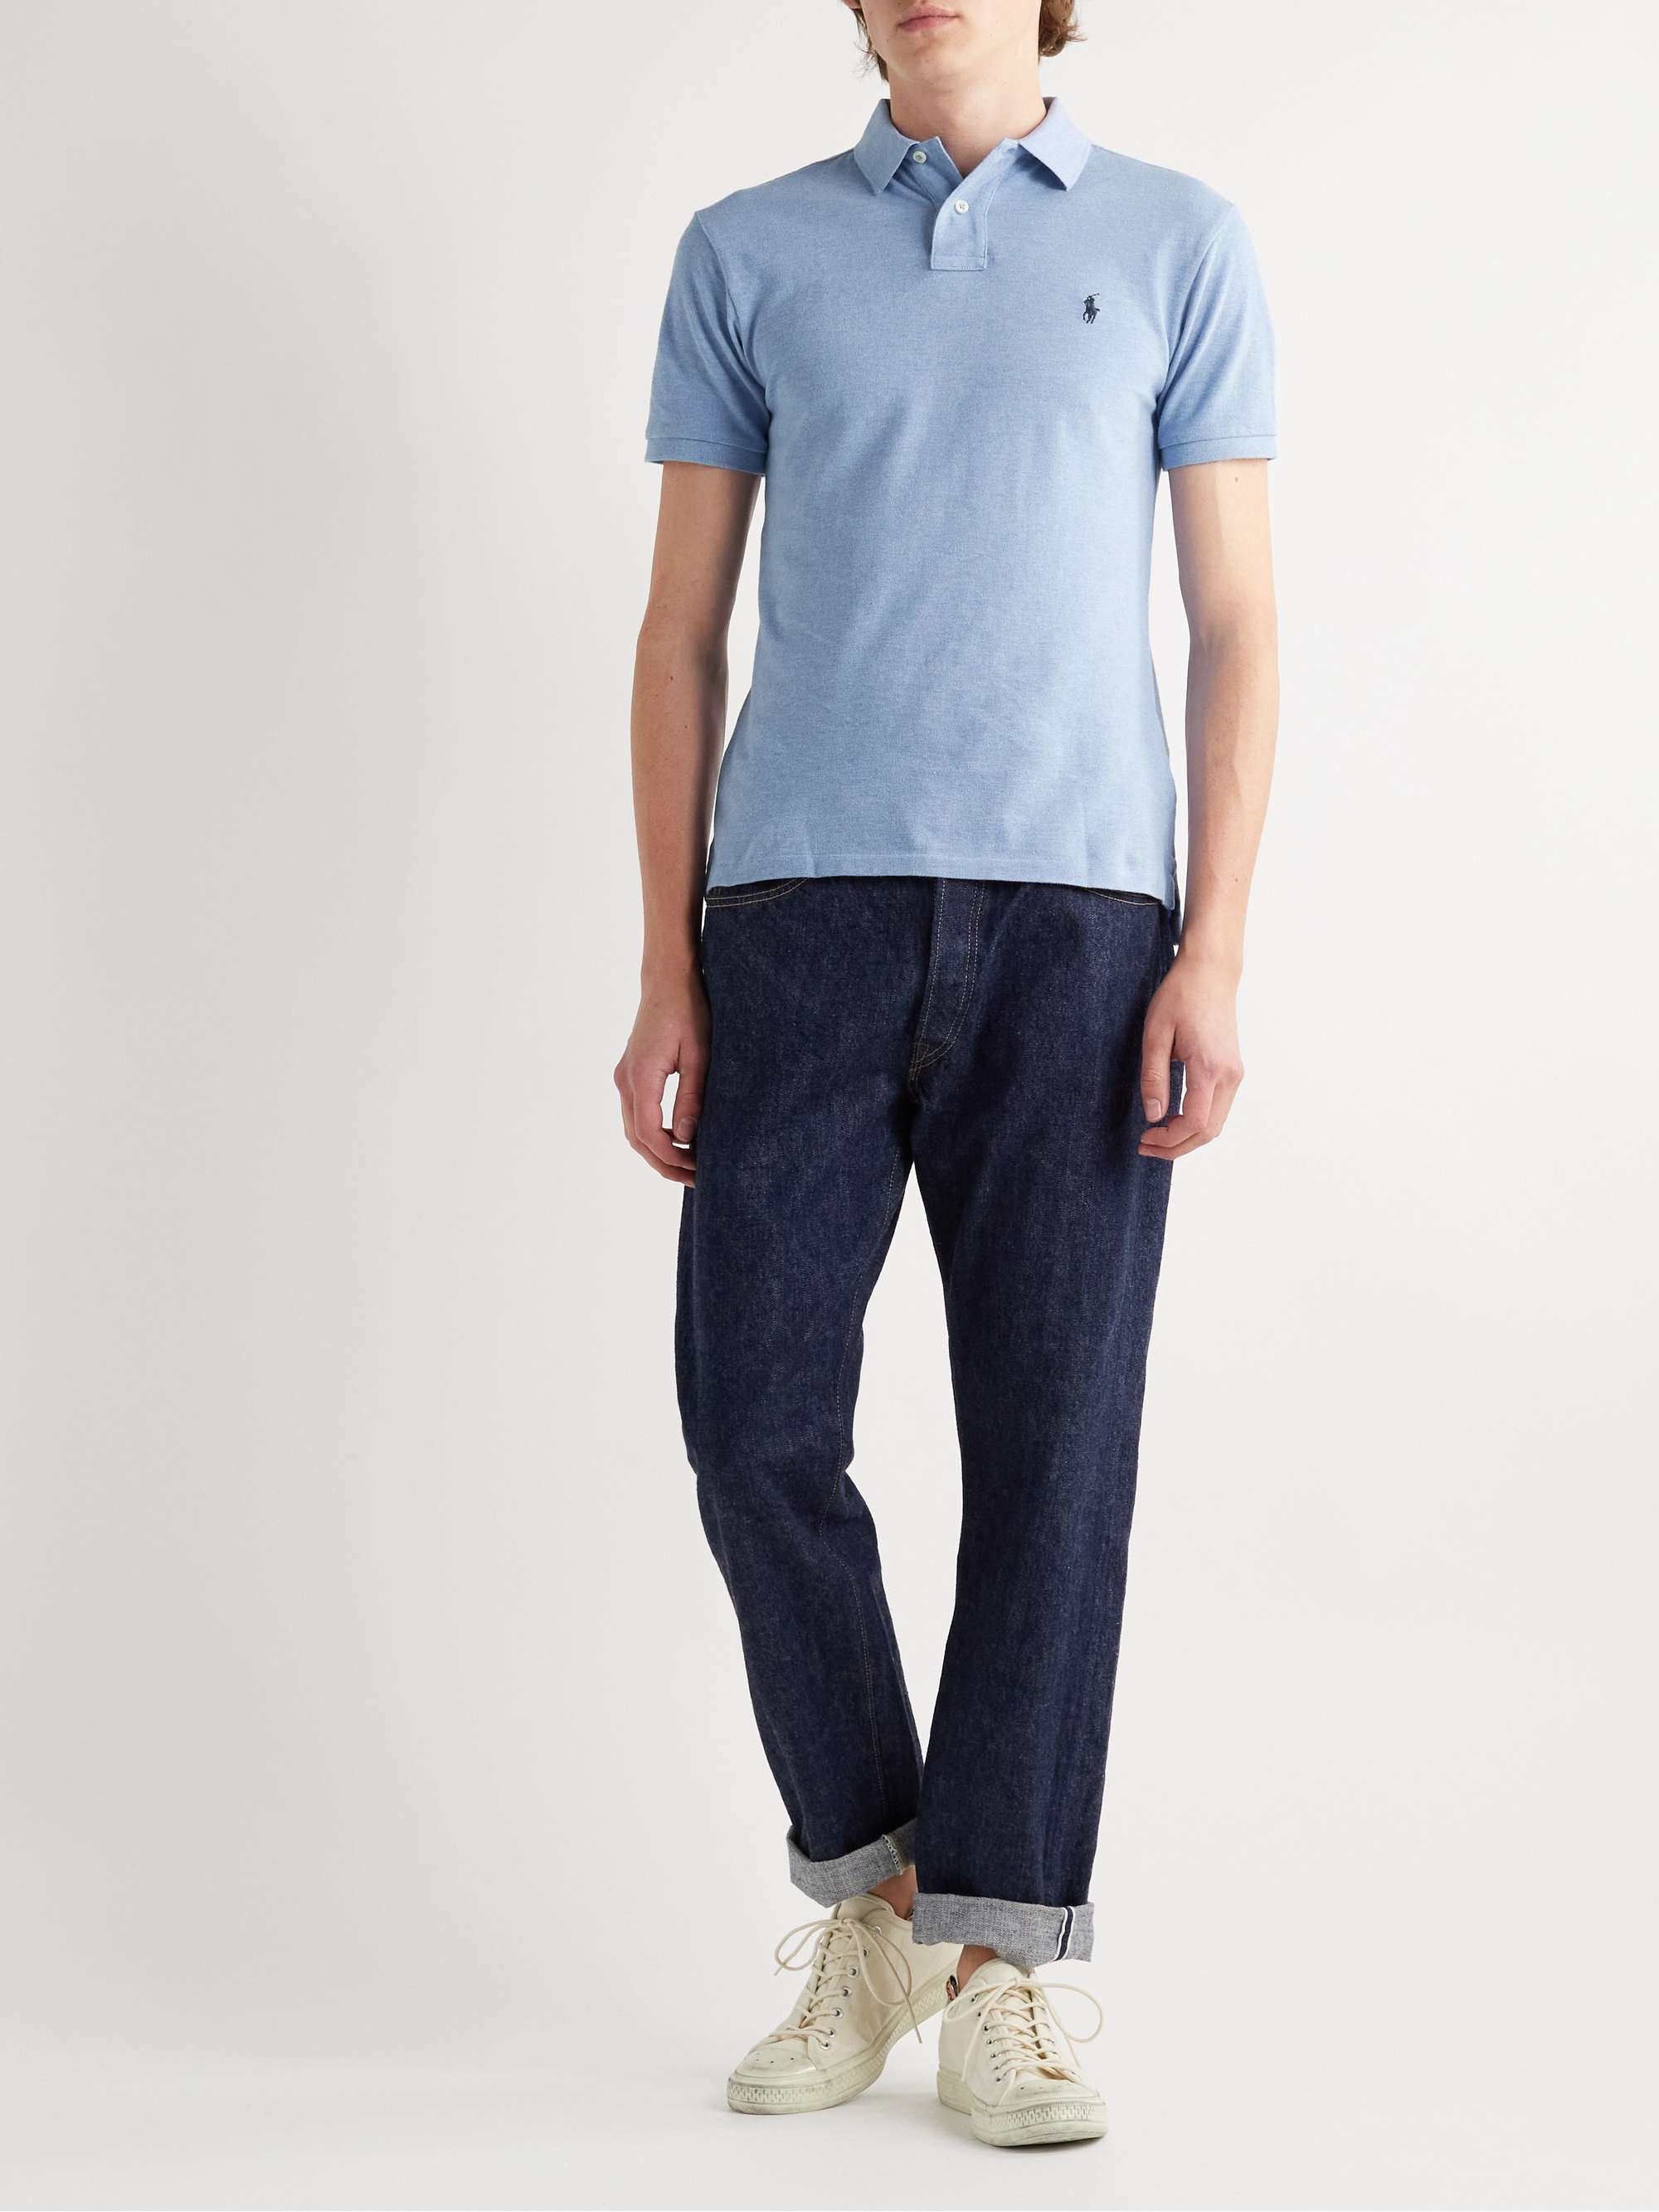 Light blue Slim-Fit Cotton-Piqué Polo Shirt | POLO RALPH LAUREN | MR PORTER